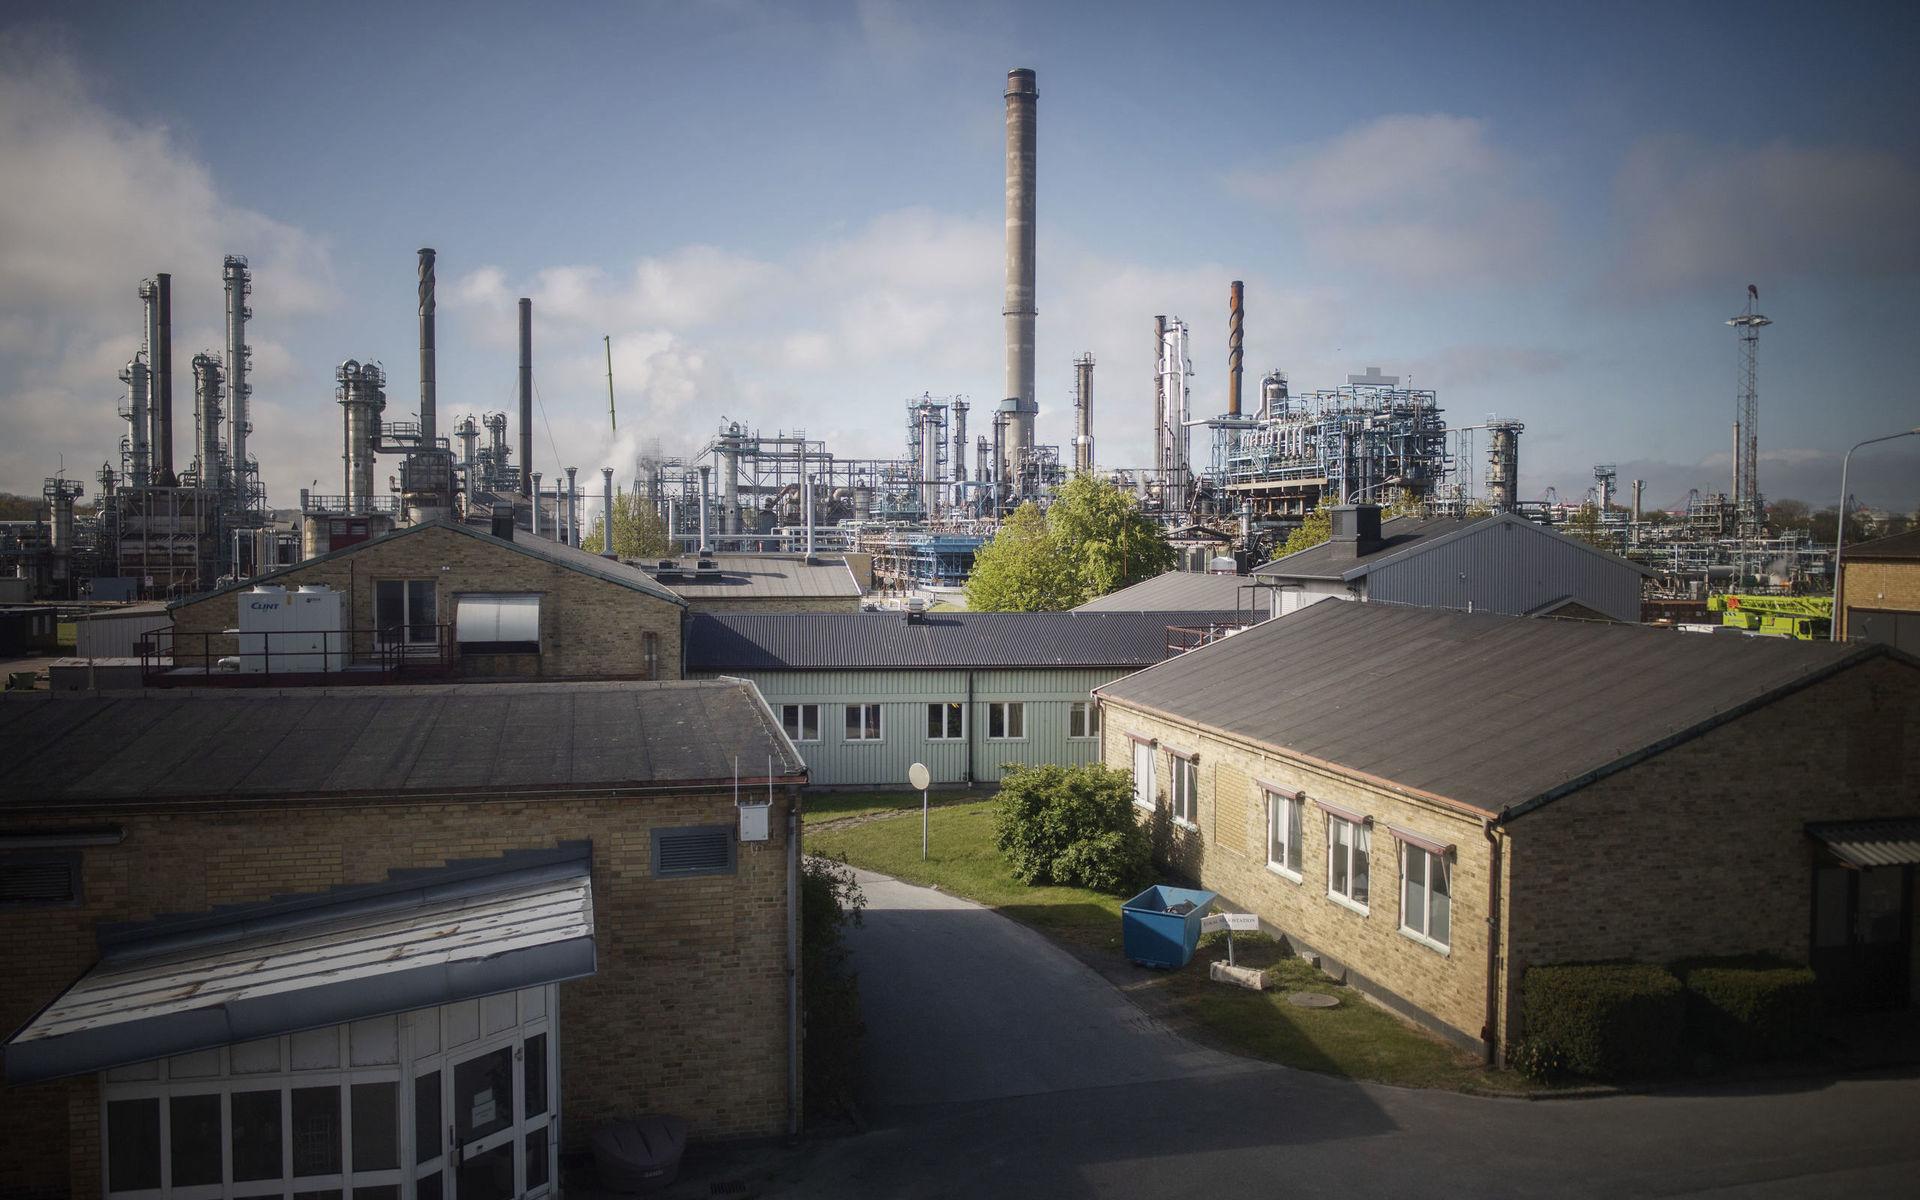 Oljebolaget St1 har ett raffinaderi i Göteborg, och kommer på plats nummer fem på listan. 